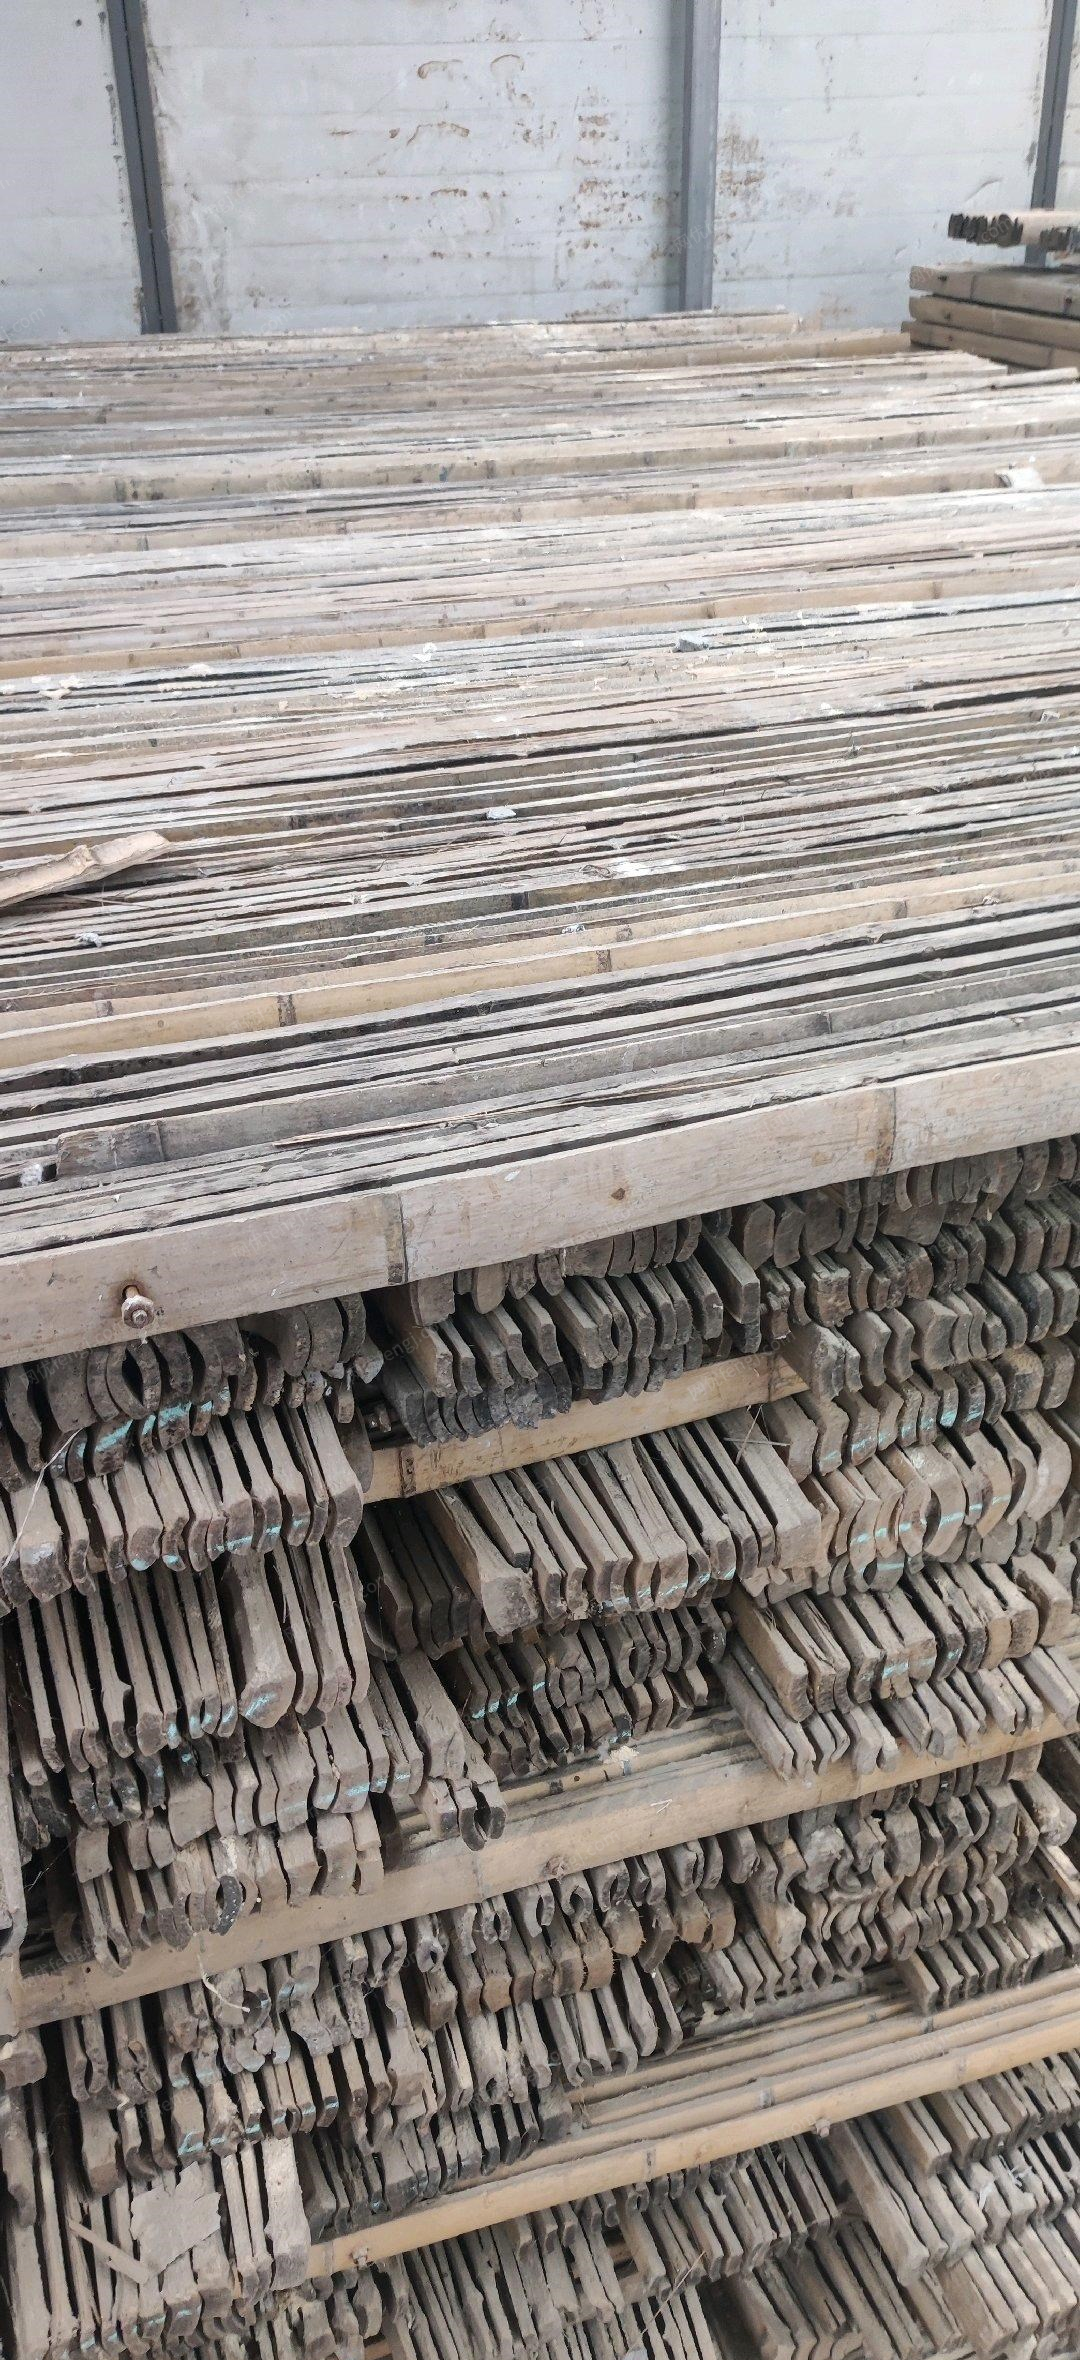 陕西西安低价出售七八成新旧竹架板！